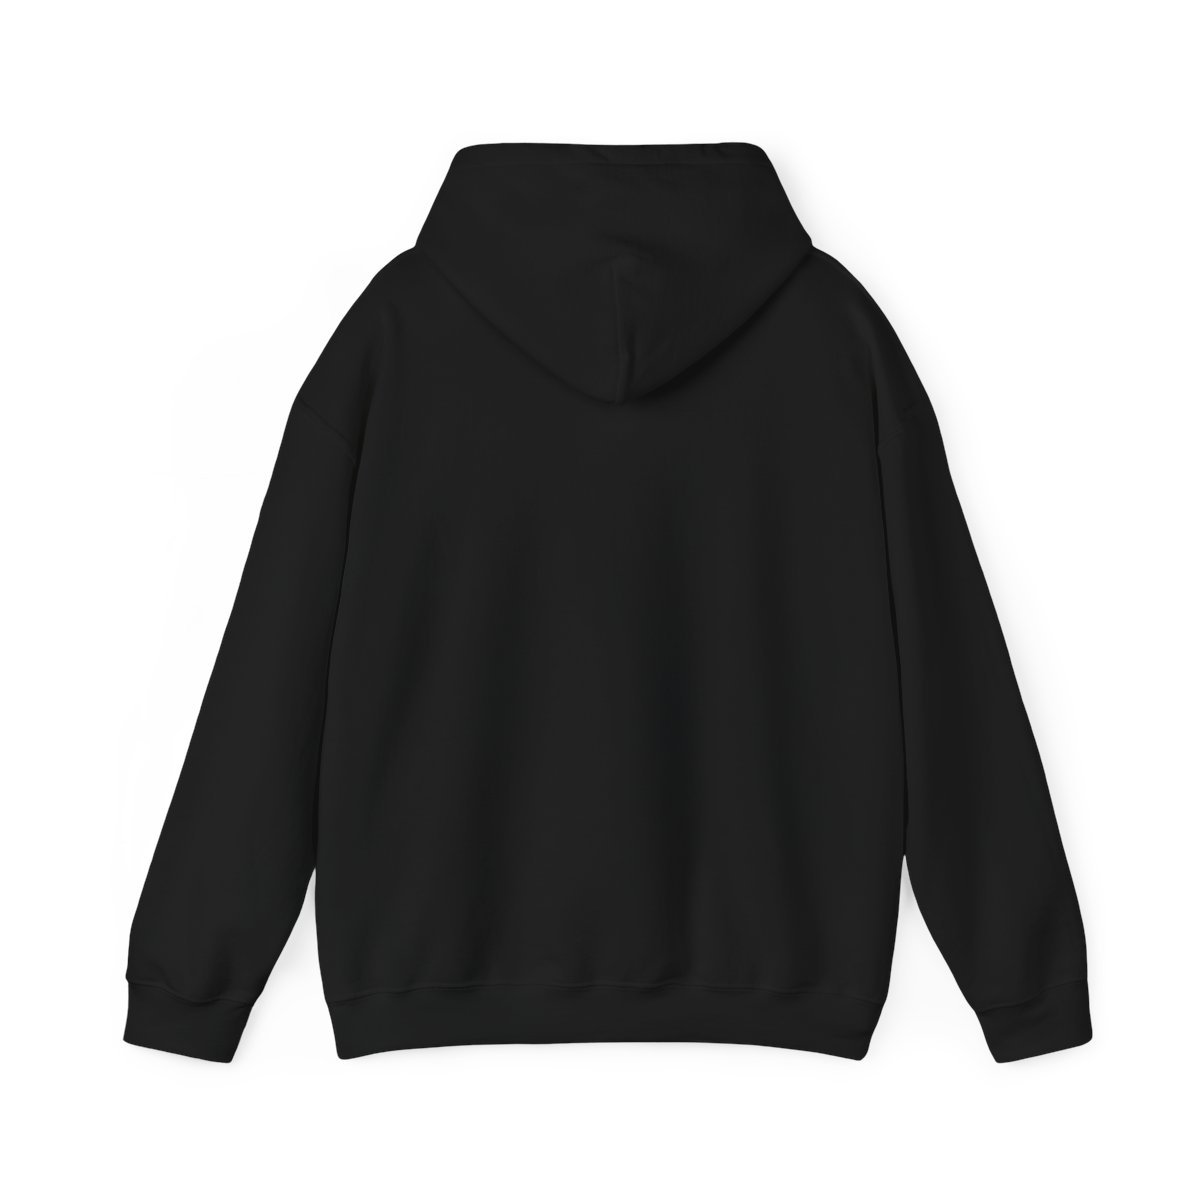 Come To Pass – Torment (Broken Curfew) Pullover Hooded Sweatshirt